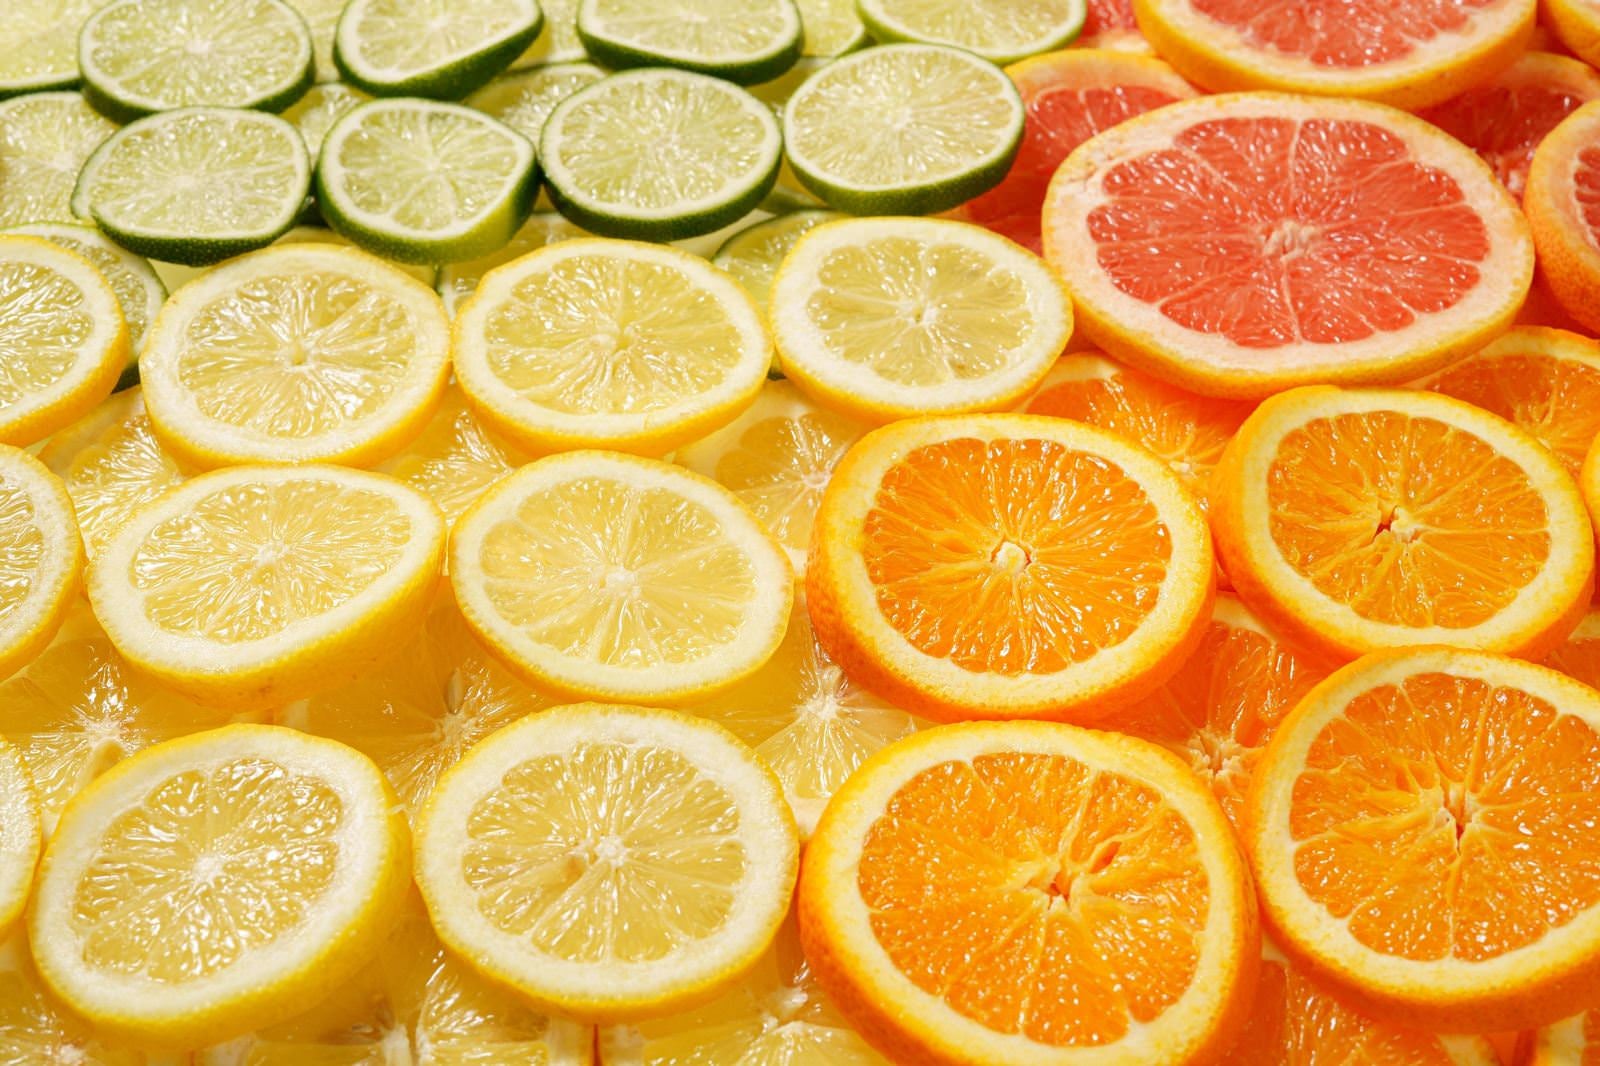 「輪切りして並んだグレープフルーツやオレンジなどの果物」の写真